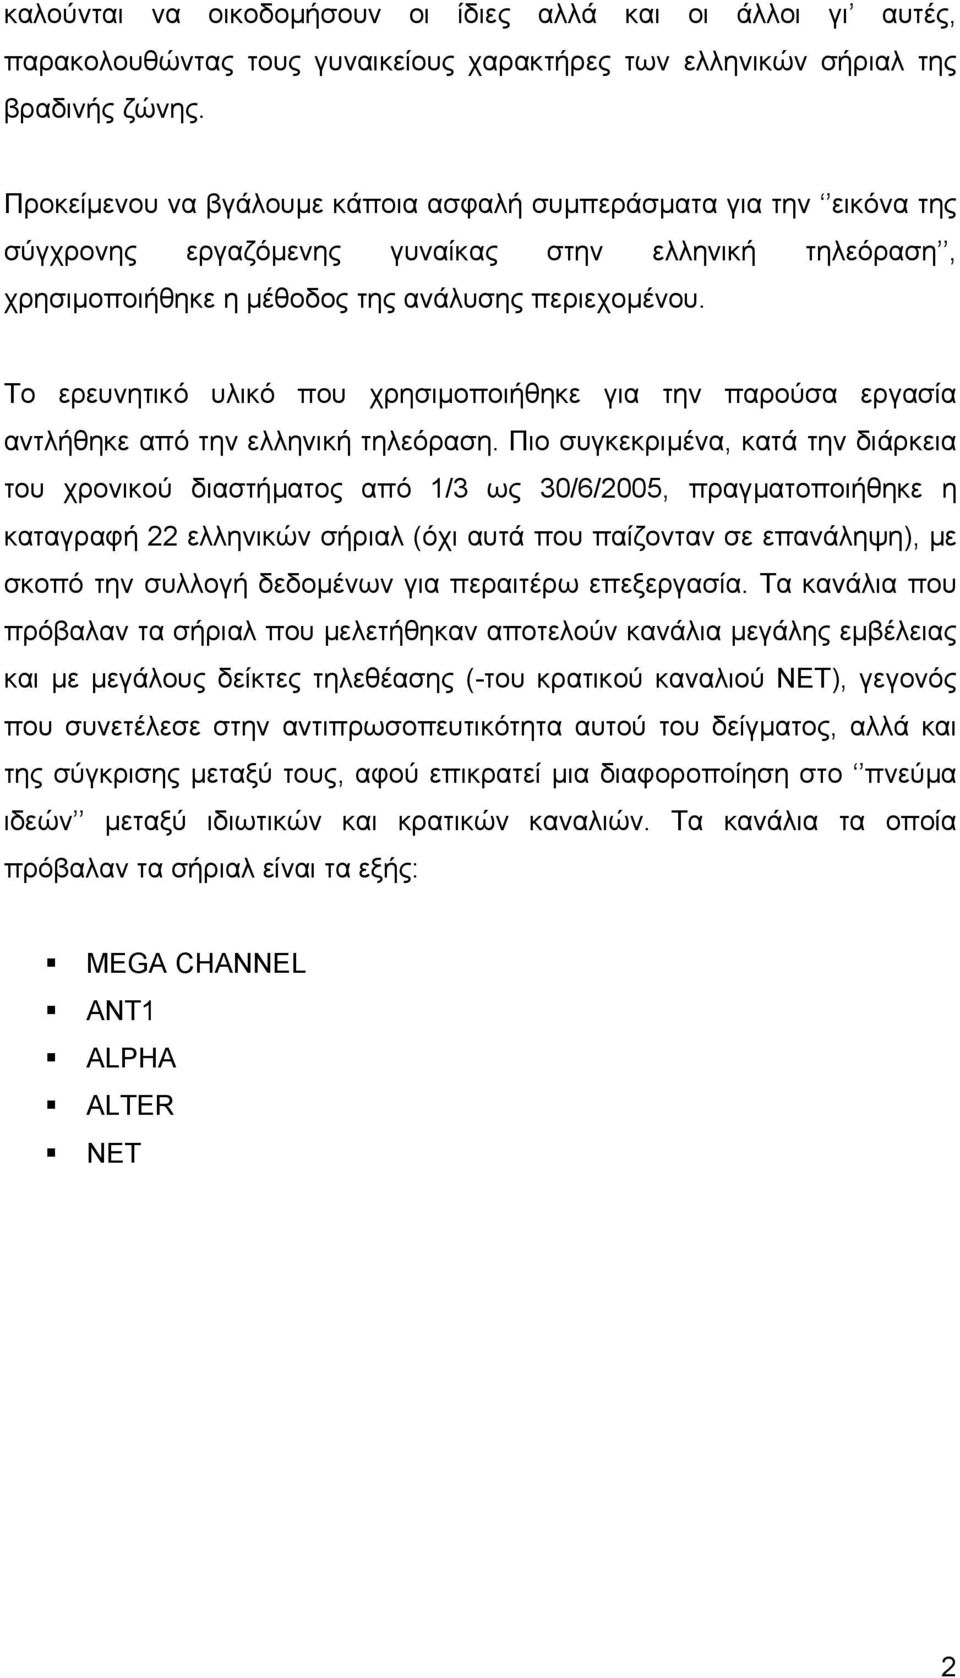 Το ερευνητικό υλικό που χρησιµοποιήθηκε για την παρούσα εργασία αντλήθηκε από την ελληνική τηλεόραση.